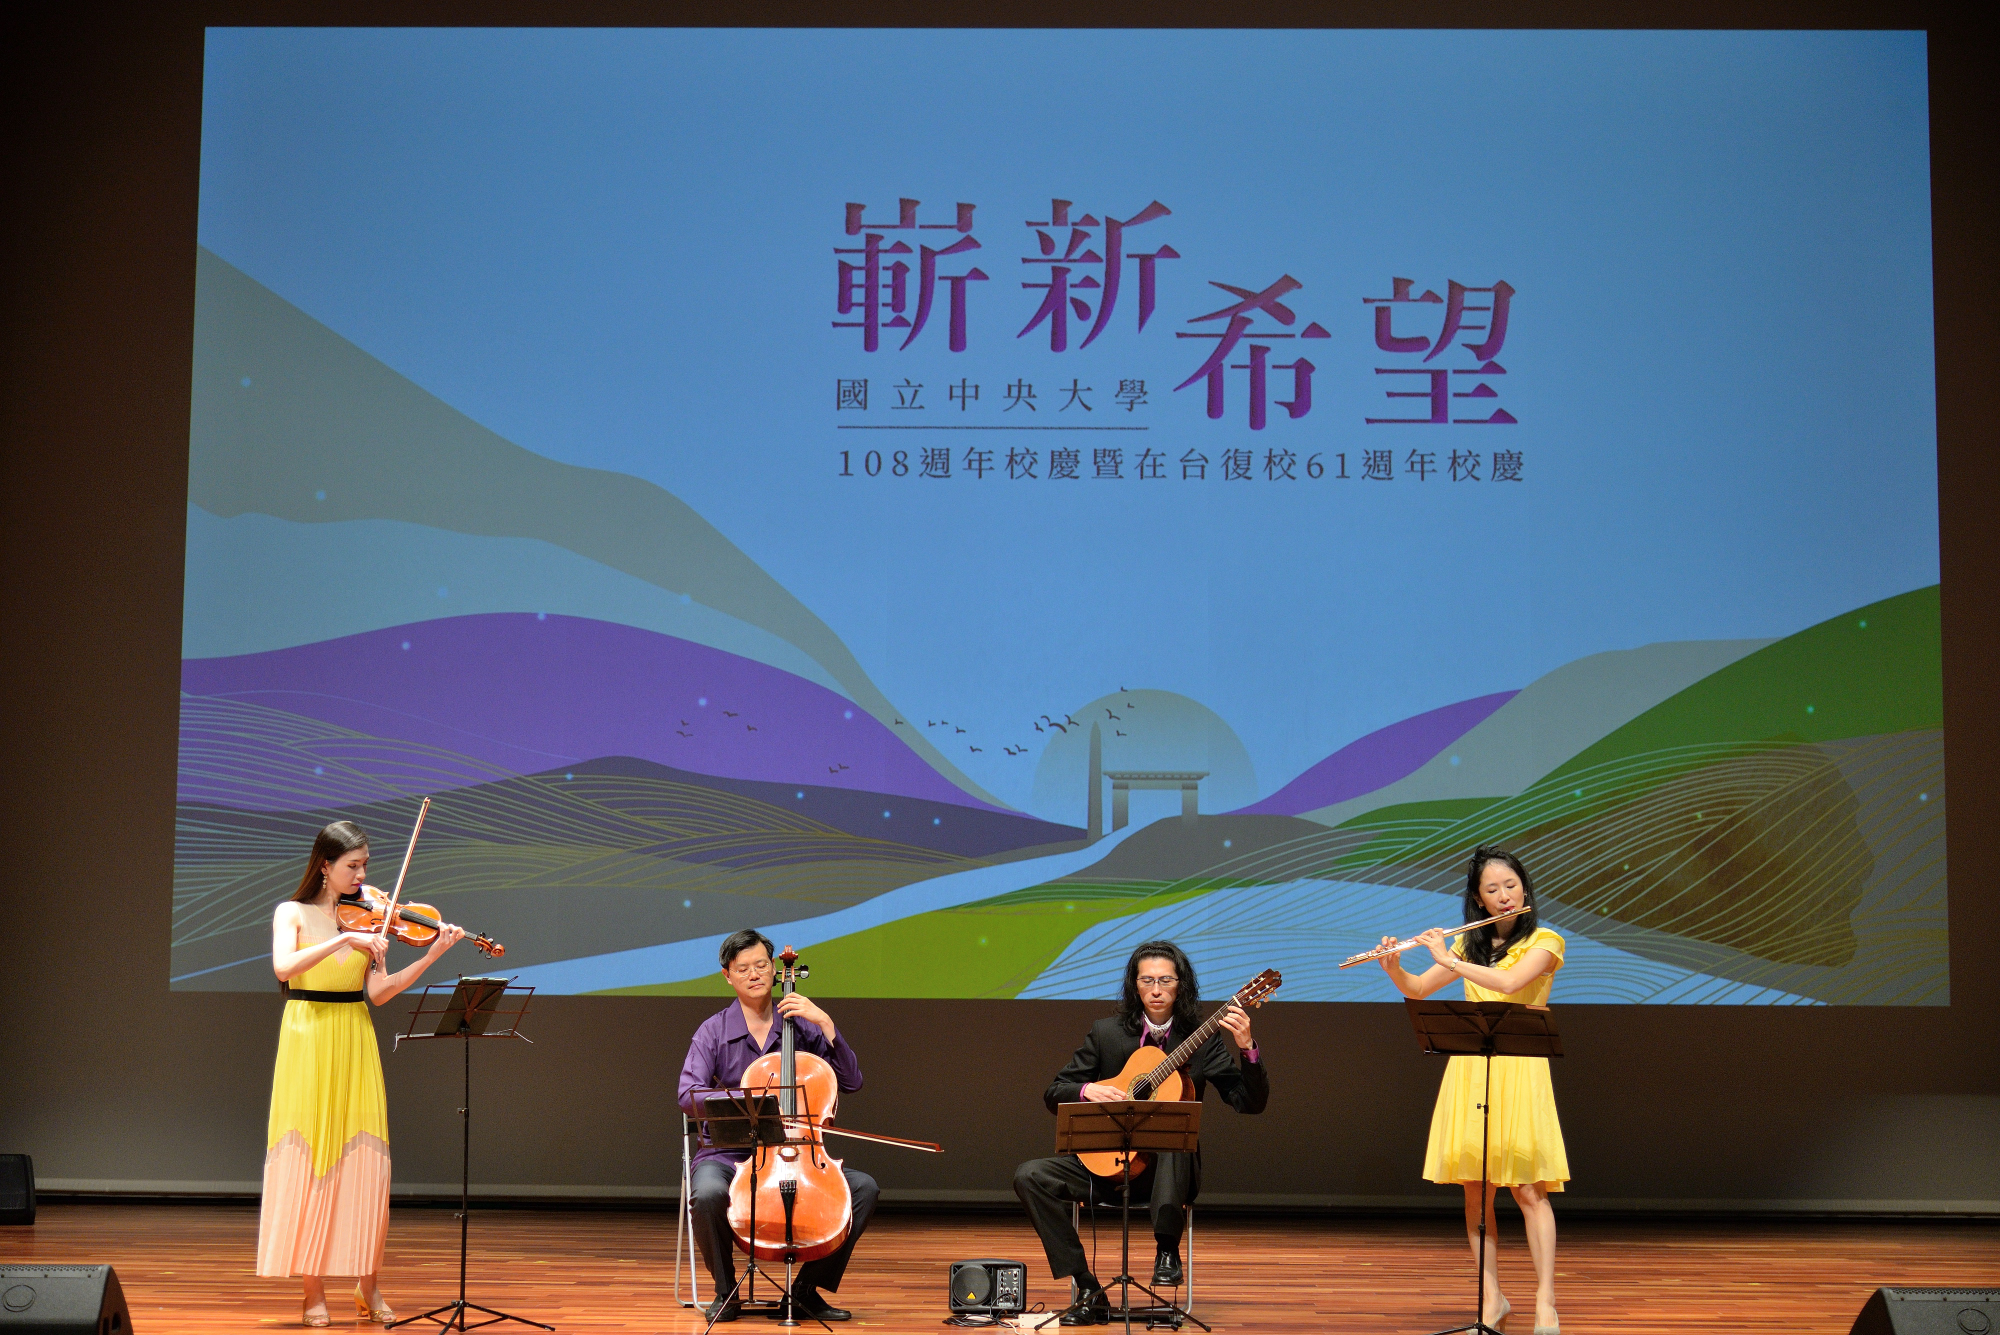 開場由台北愛樂管絃樂團室內樂坊進行精彩演出，讓觀眾沉醉在悠揚的樂曲之中。照片秘書室提供